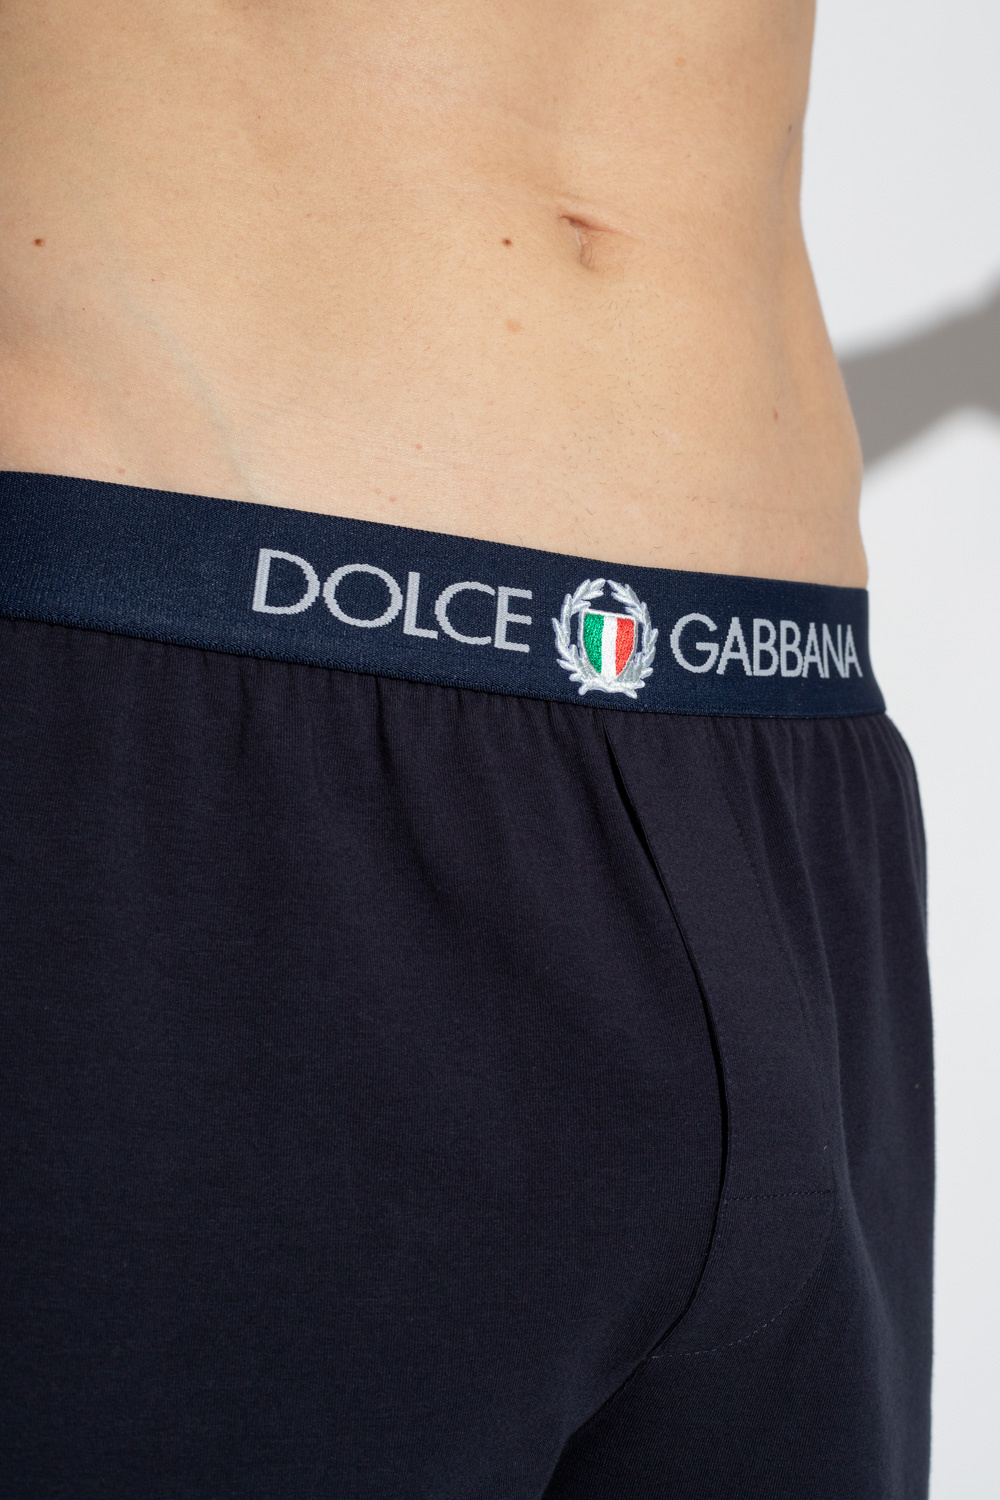 Dolce & Gabbana logo slip-on sneakers amore shoulder bag with logo dolce gabbana bag